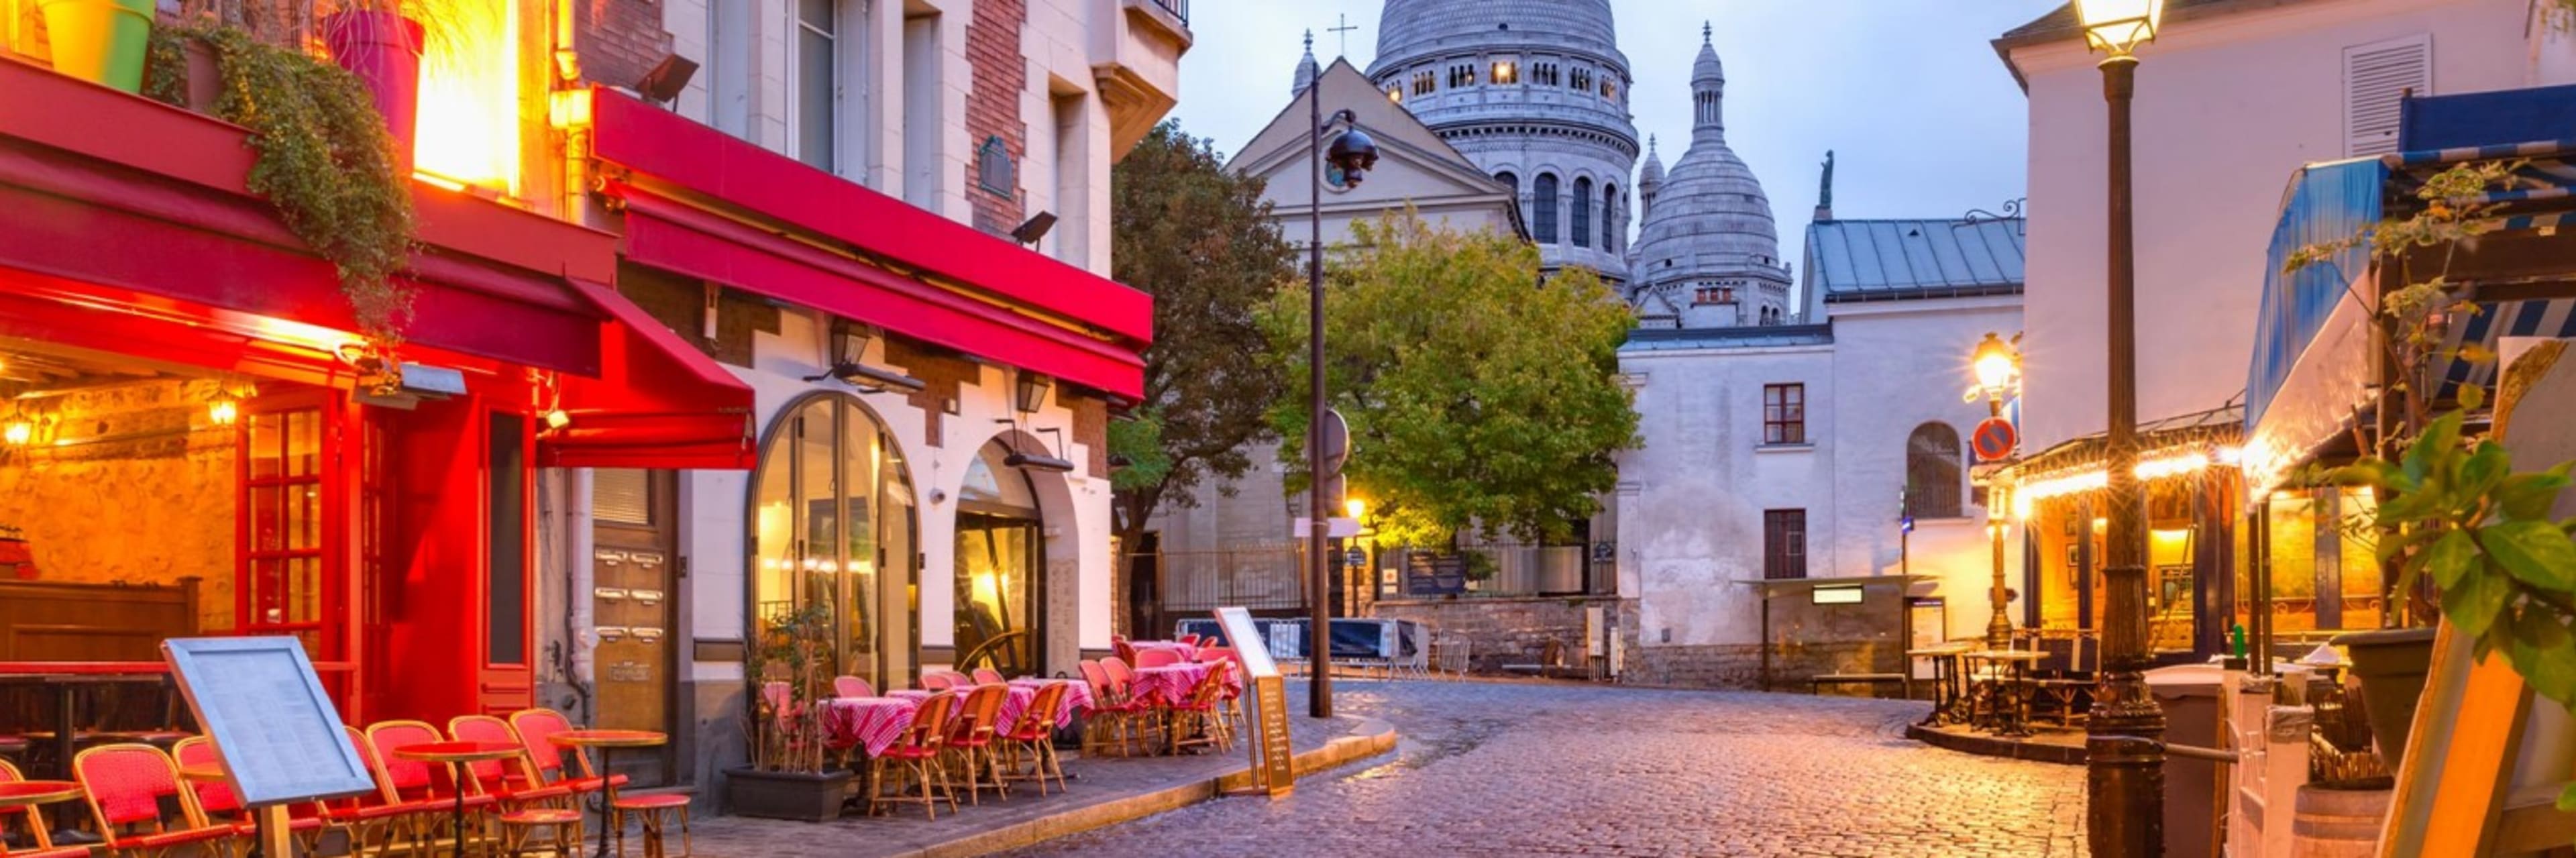 Montmartre & Sacré Coeur